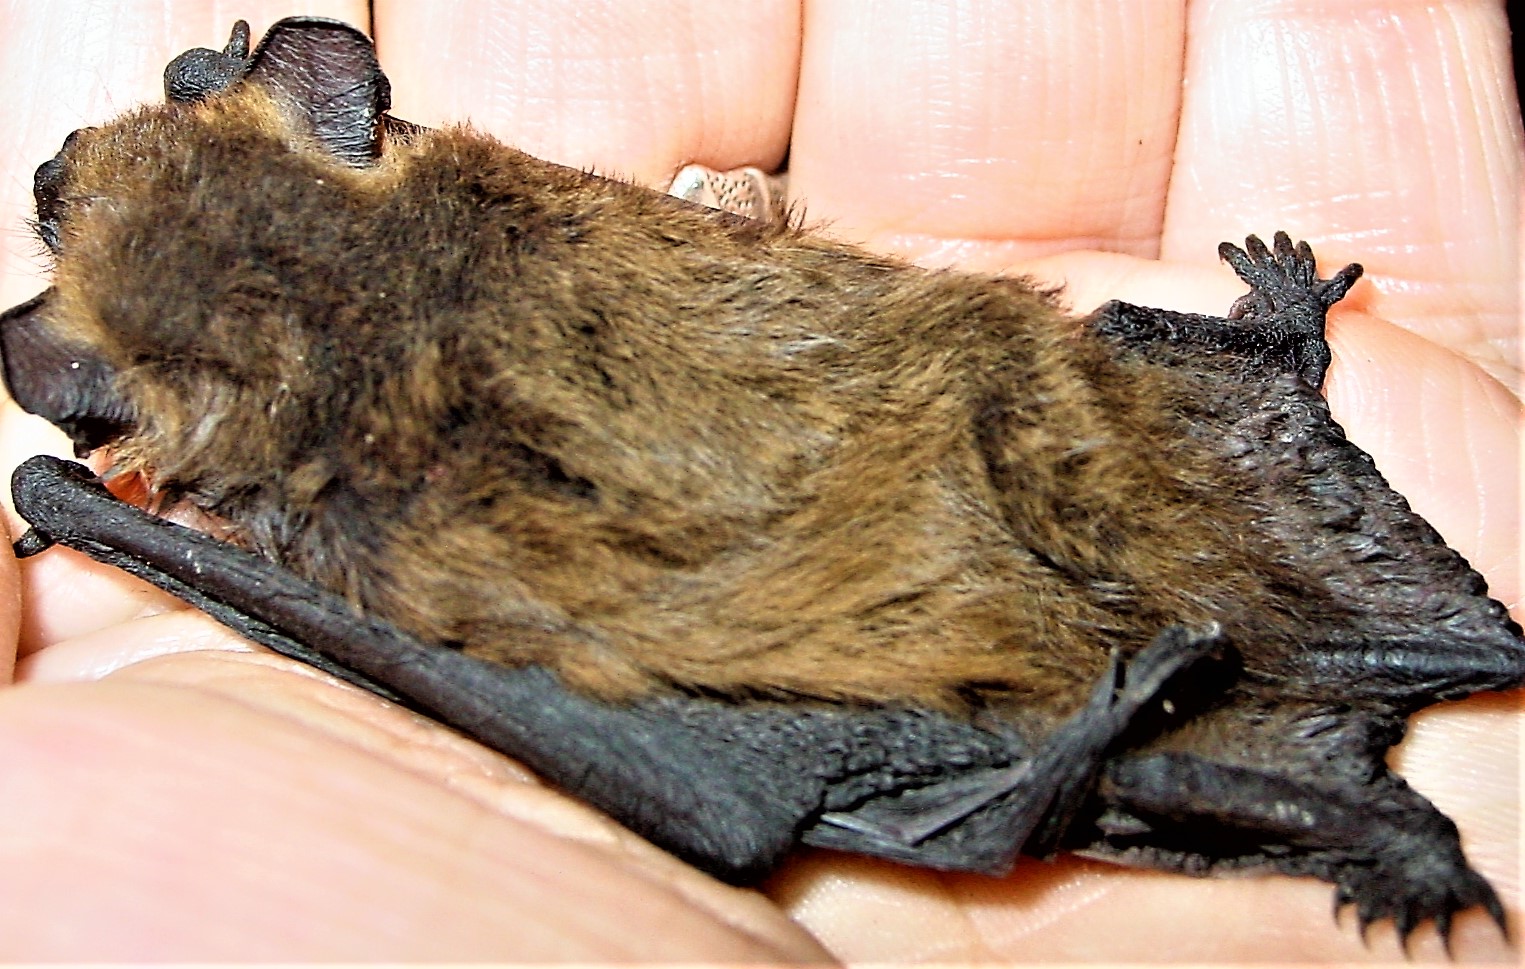 Das Foto zeigt eine Fledermaus mit Exsiccose (Austrocknung), die Hautfalten bleiben stehen. // the photo shows a bat with exsiccosis (dehydration), the skin folds remain standing.